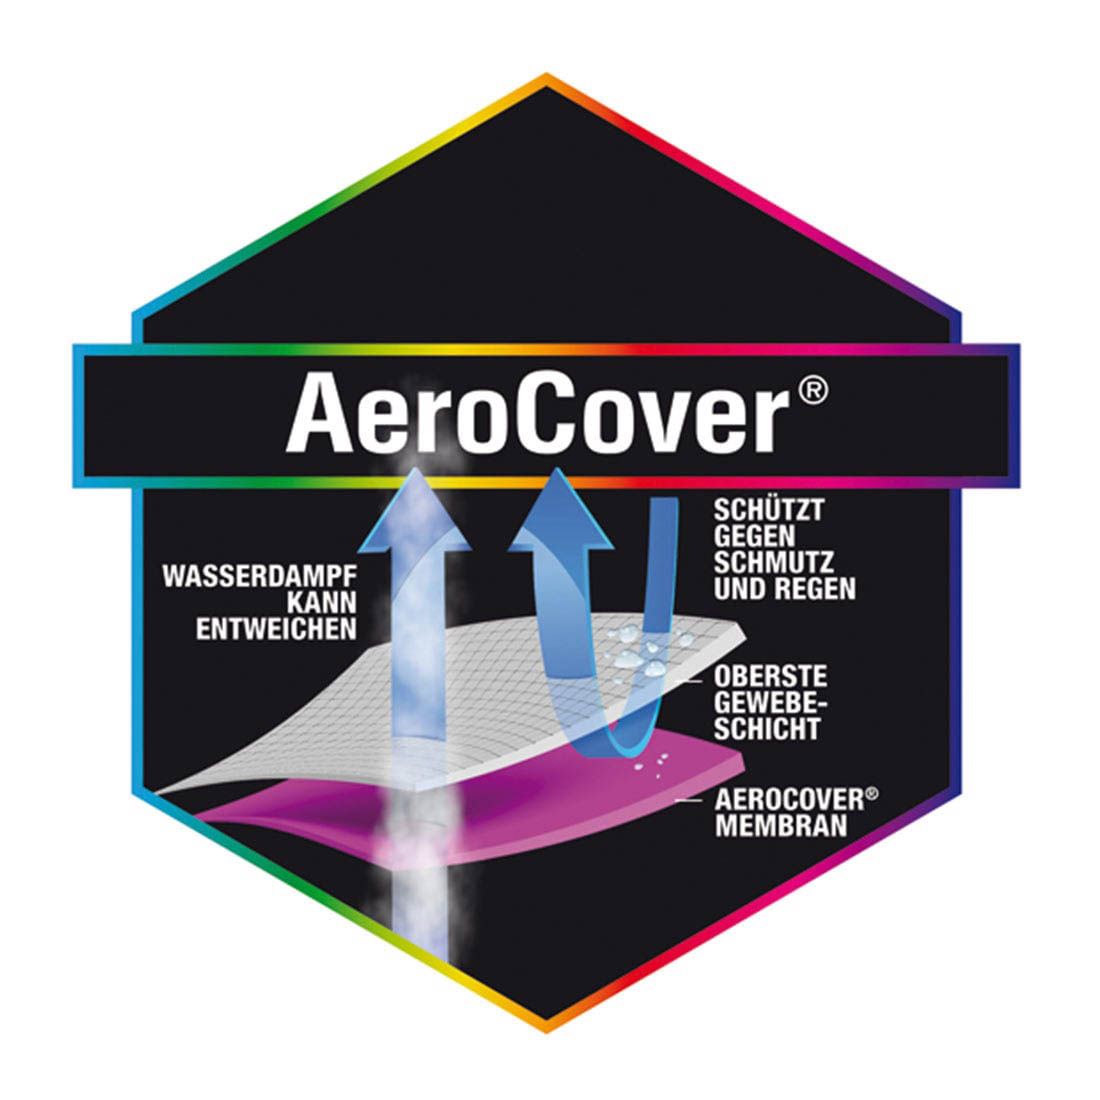 AeroCover Schutztasche für Kissen 80x80x56cm Polyester